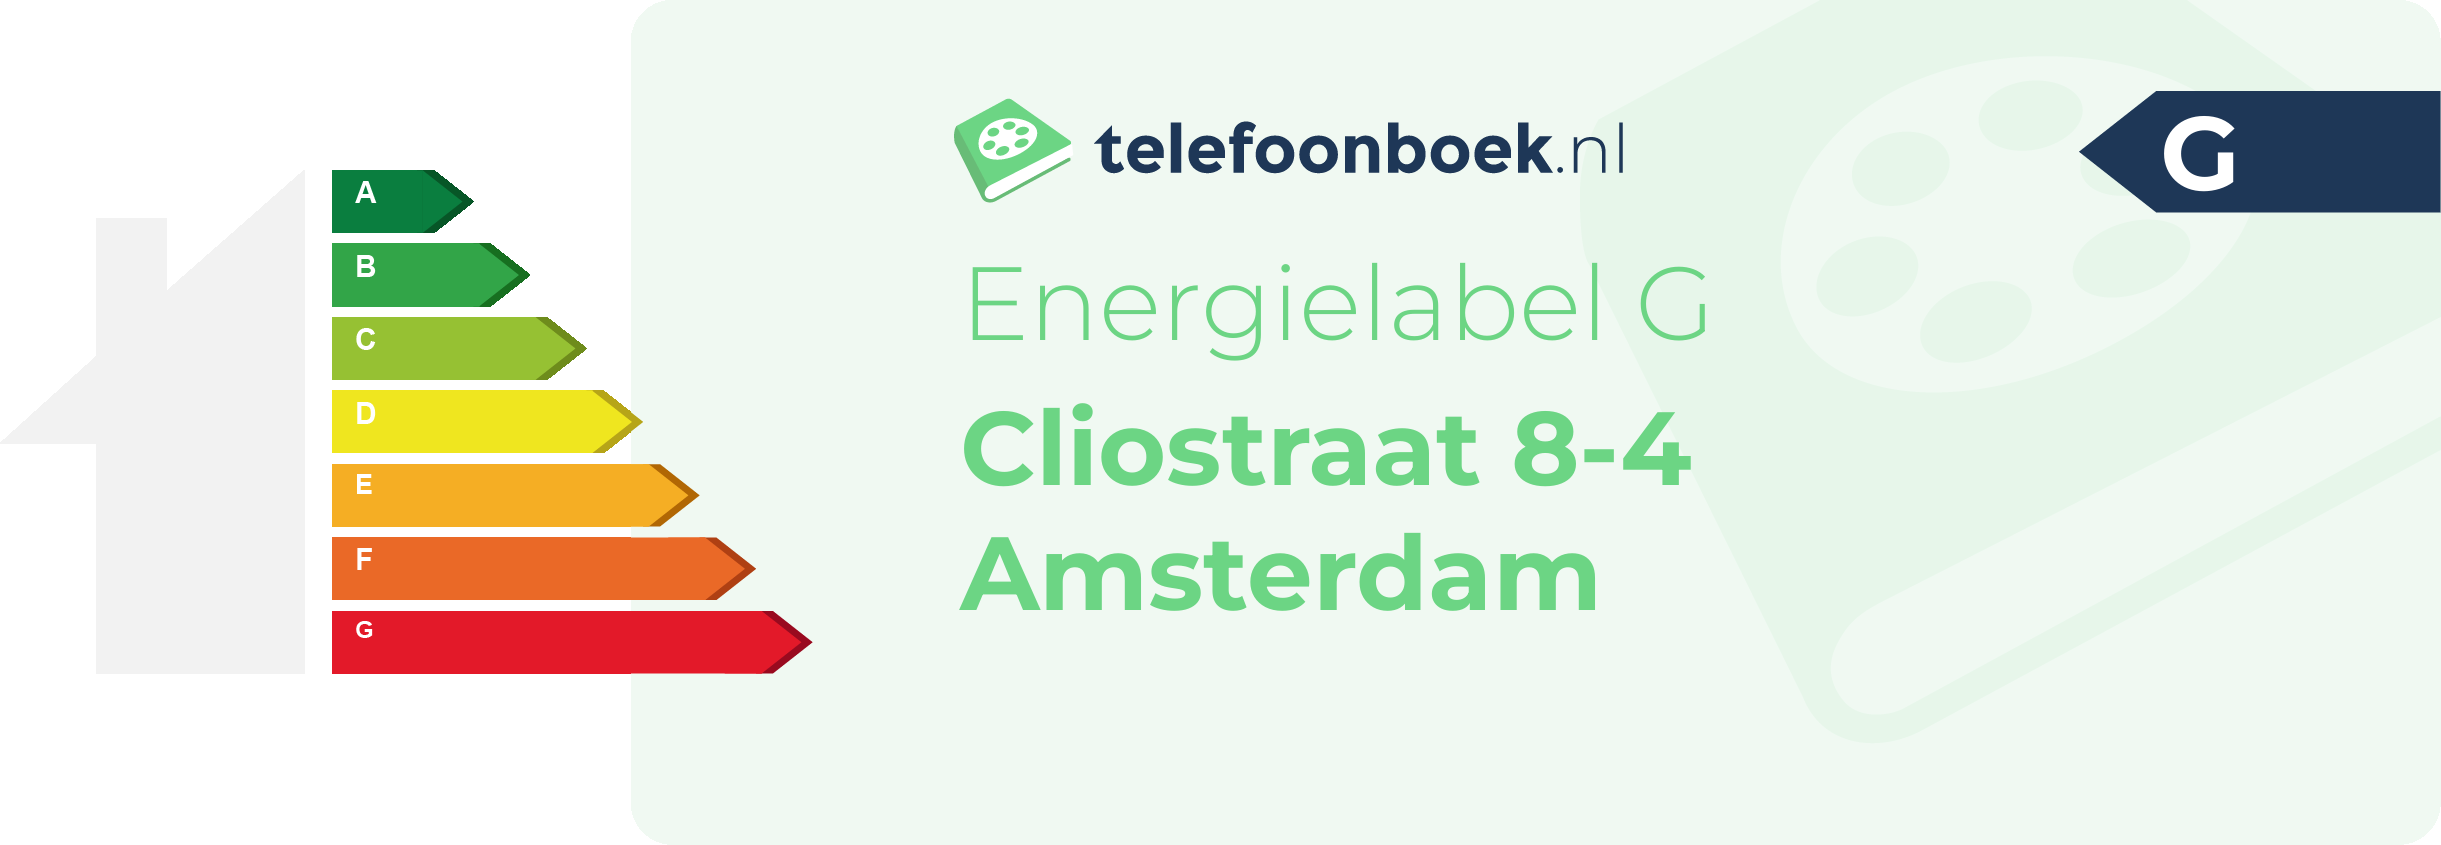 Energielabel Cliostraat 8-4 Amsterdam